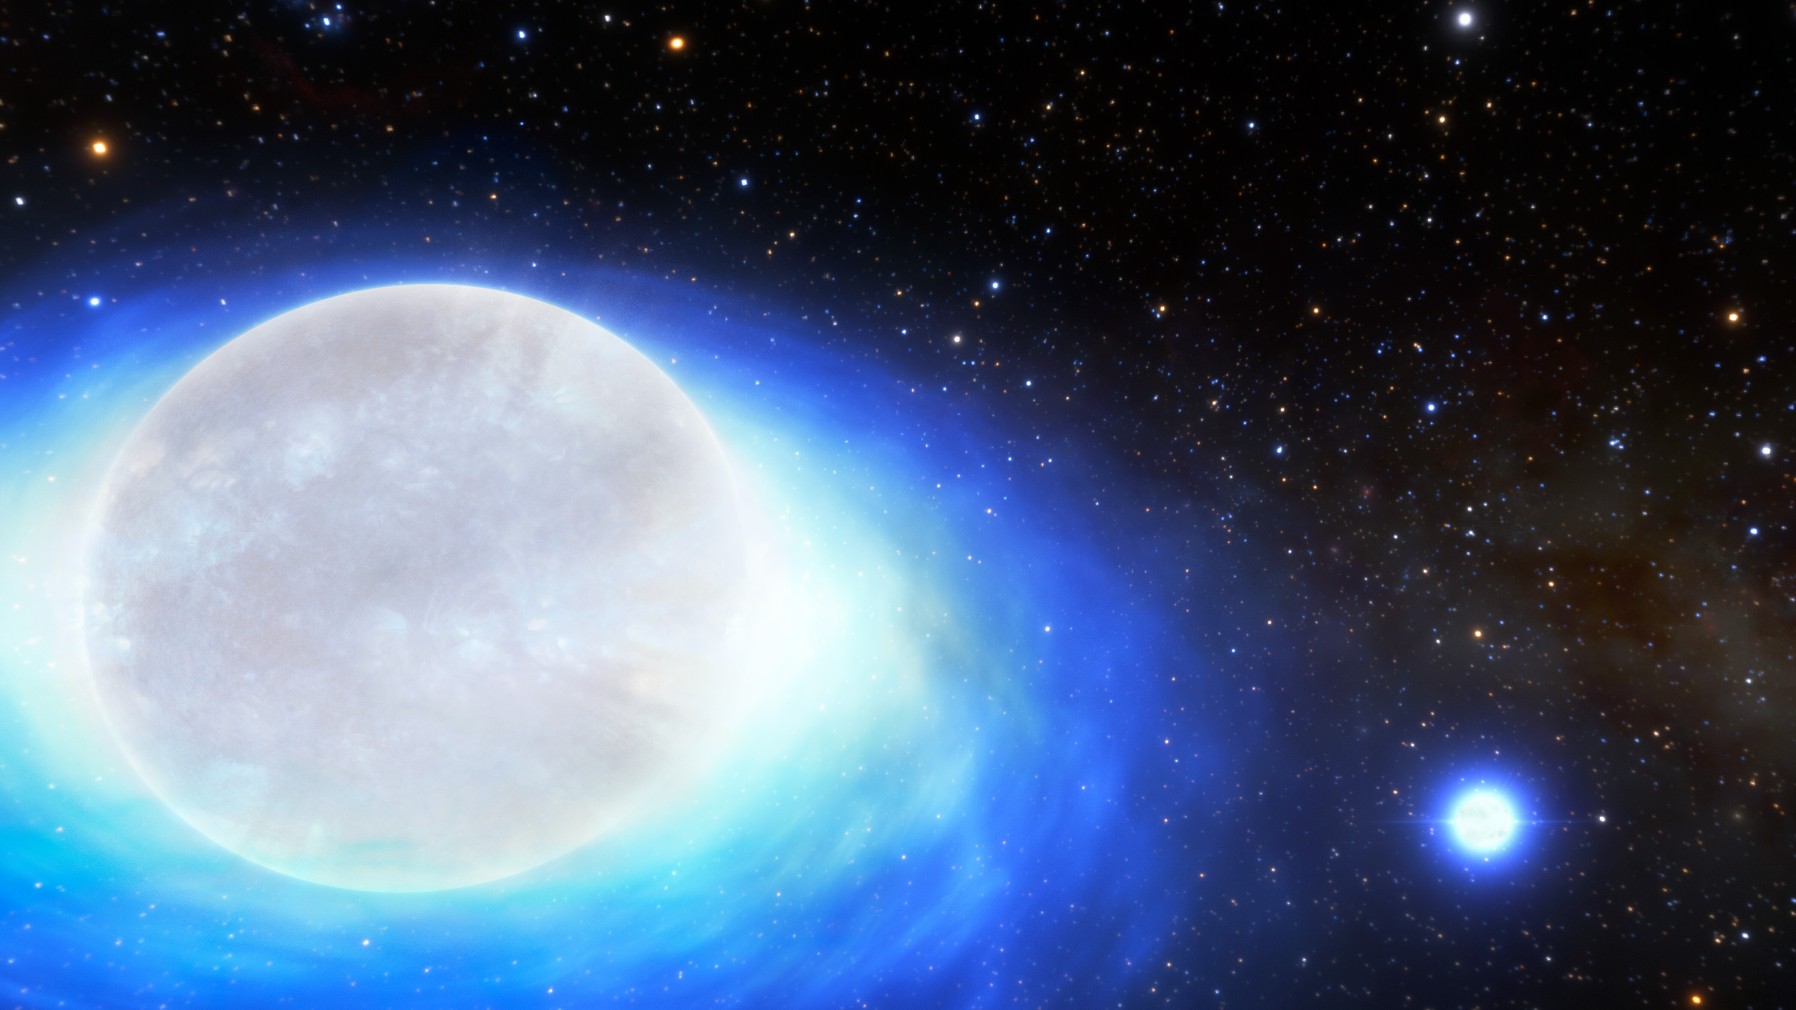 ‘1-in-10-billion’ star system is doomed to blow up in a fiery kilonova